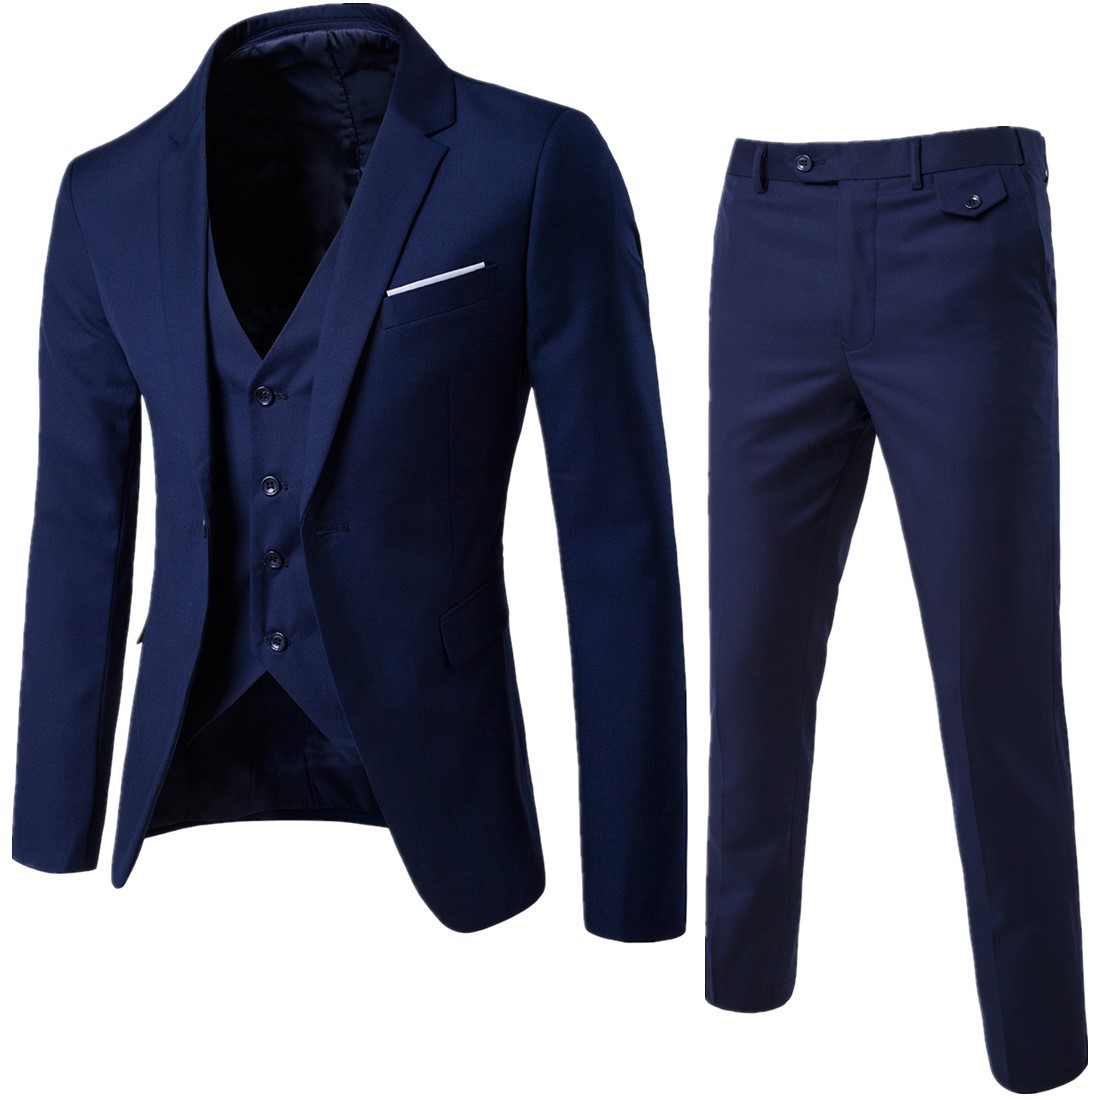 Spring 2020 new men's two piece suit Korean slim suit men's casual Plaid fashion suit